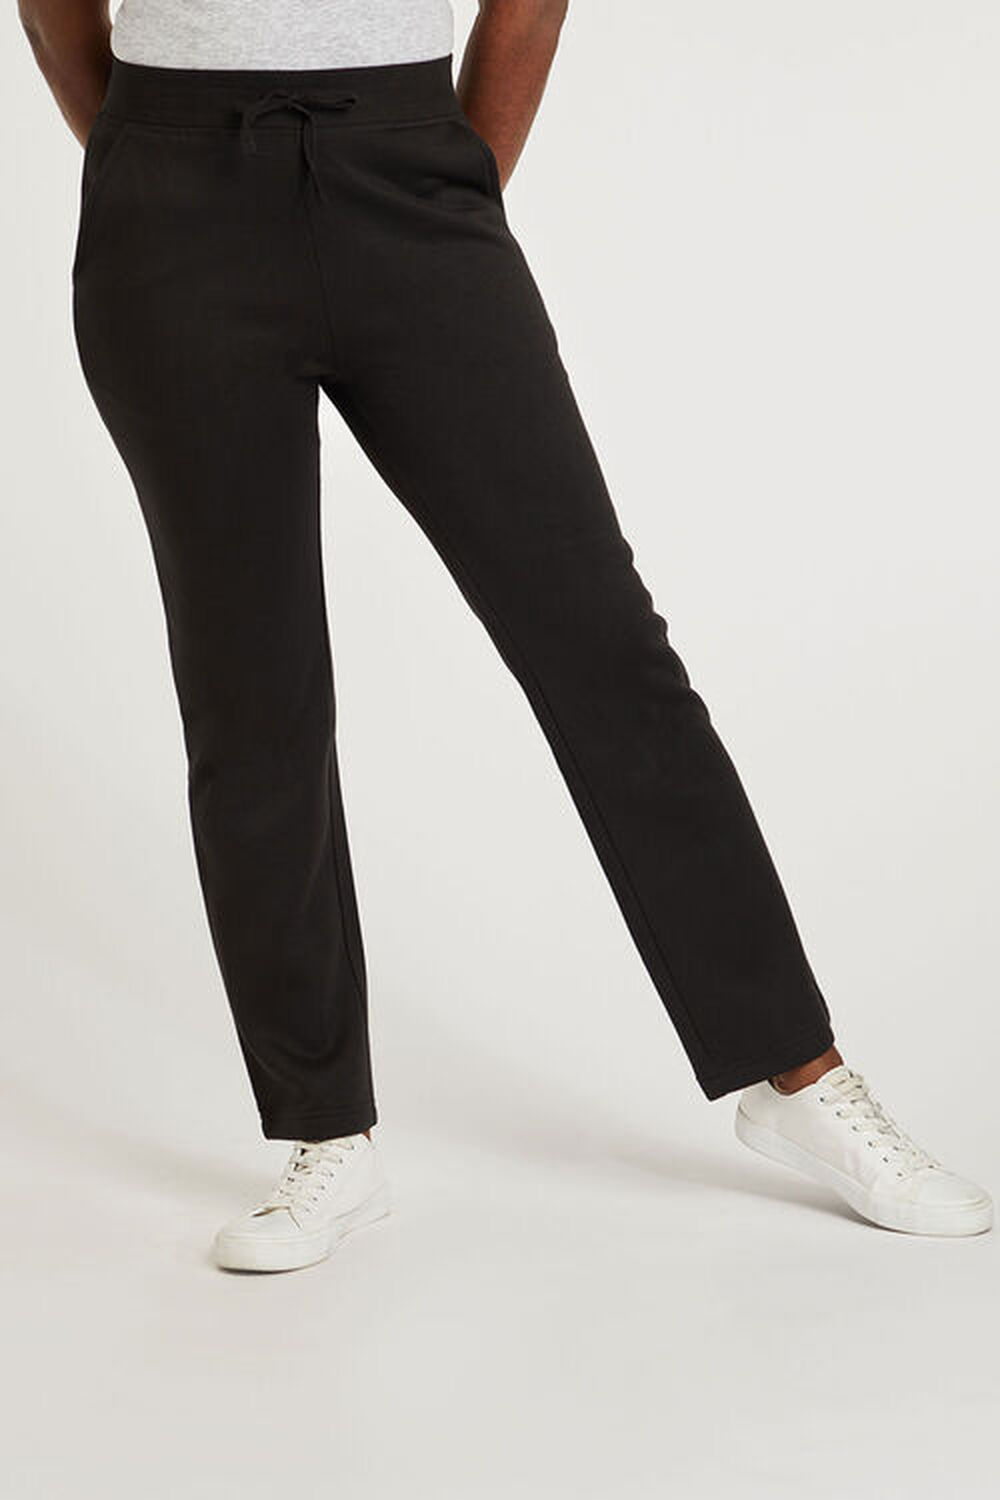 Bonmarche Black Jogging Pants, Size: 12